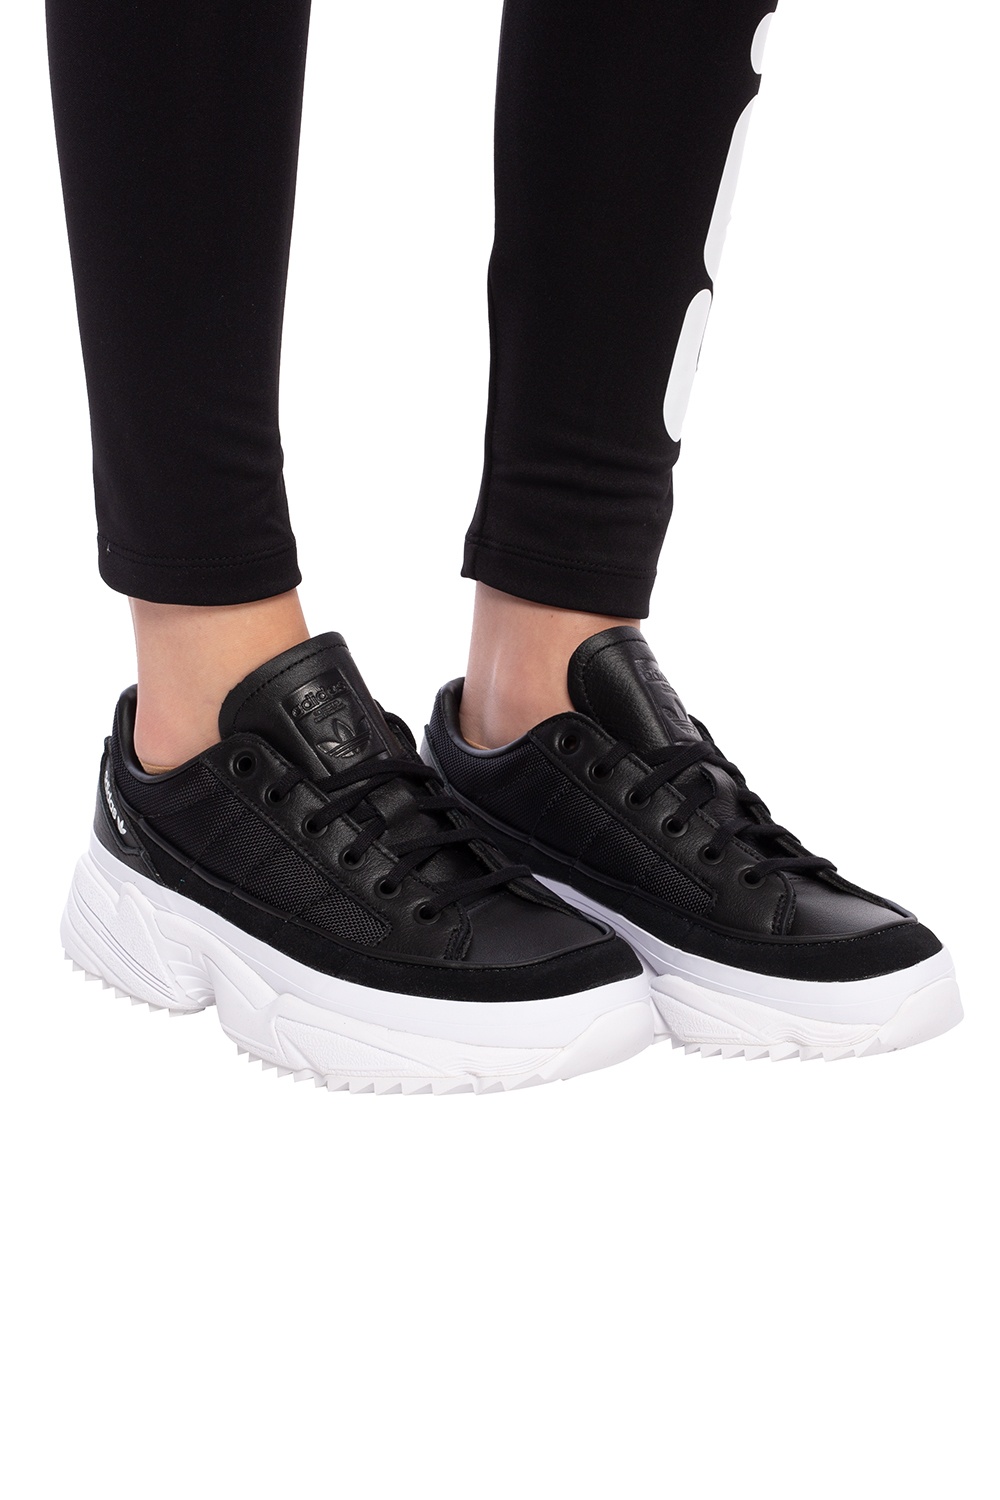 adidas originals kiellor sneaker in black